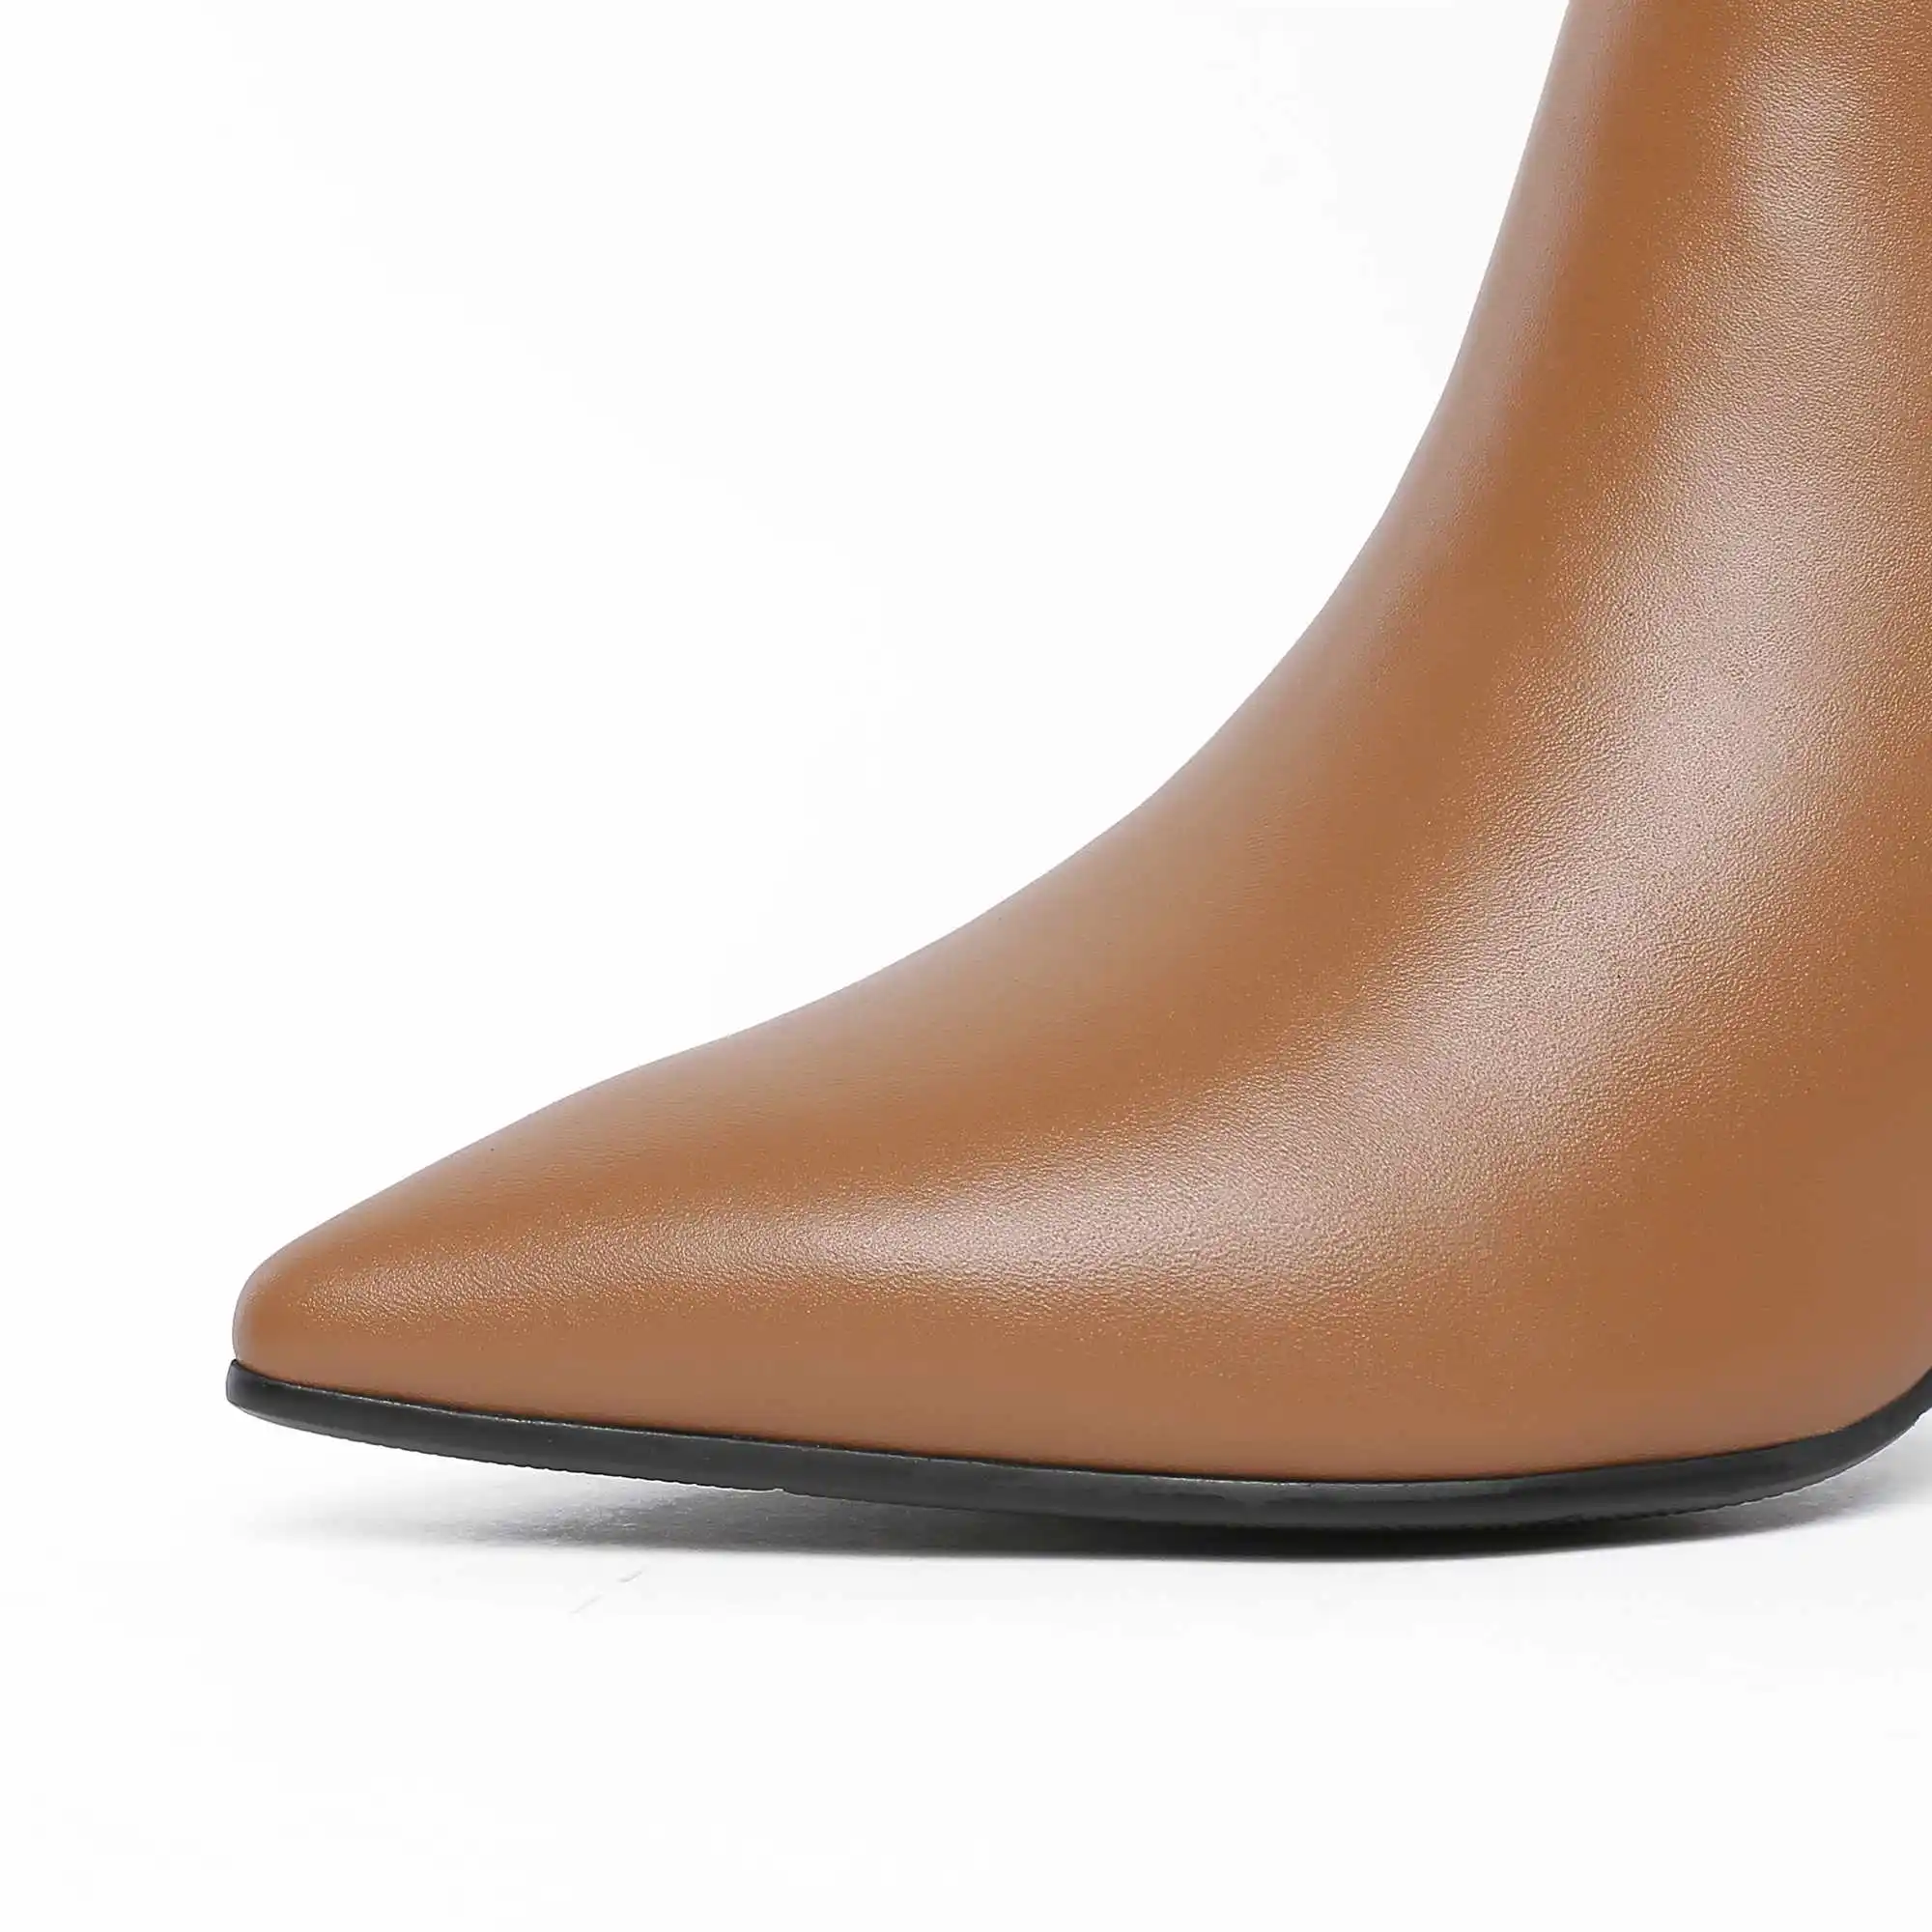 Krazing pot/модные европейские дизайнерские ботфорты из натуральной кожи с острым носком на высоком каблуке, сохраняющие тепло, на шнуровке, L1f6